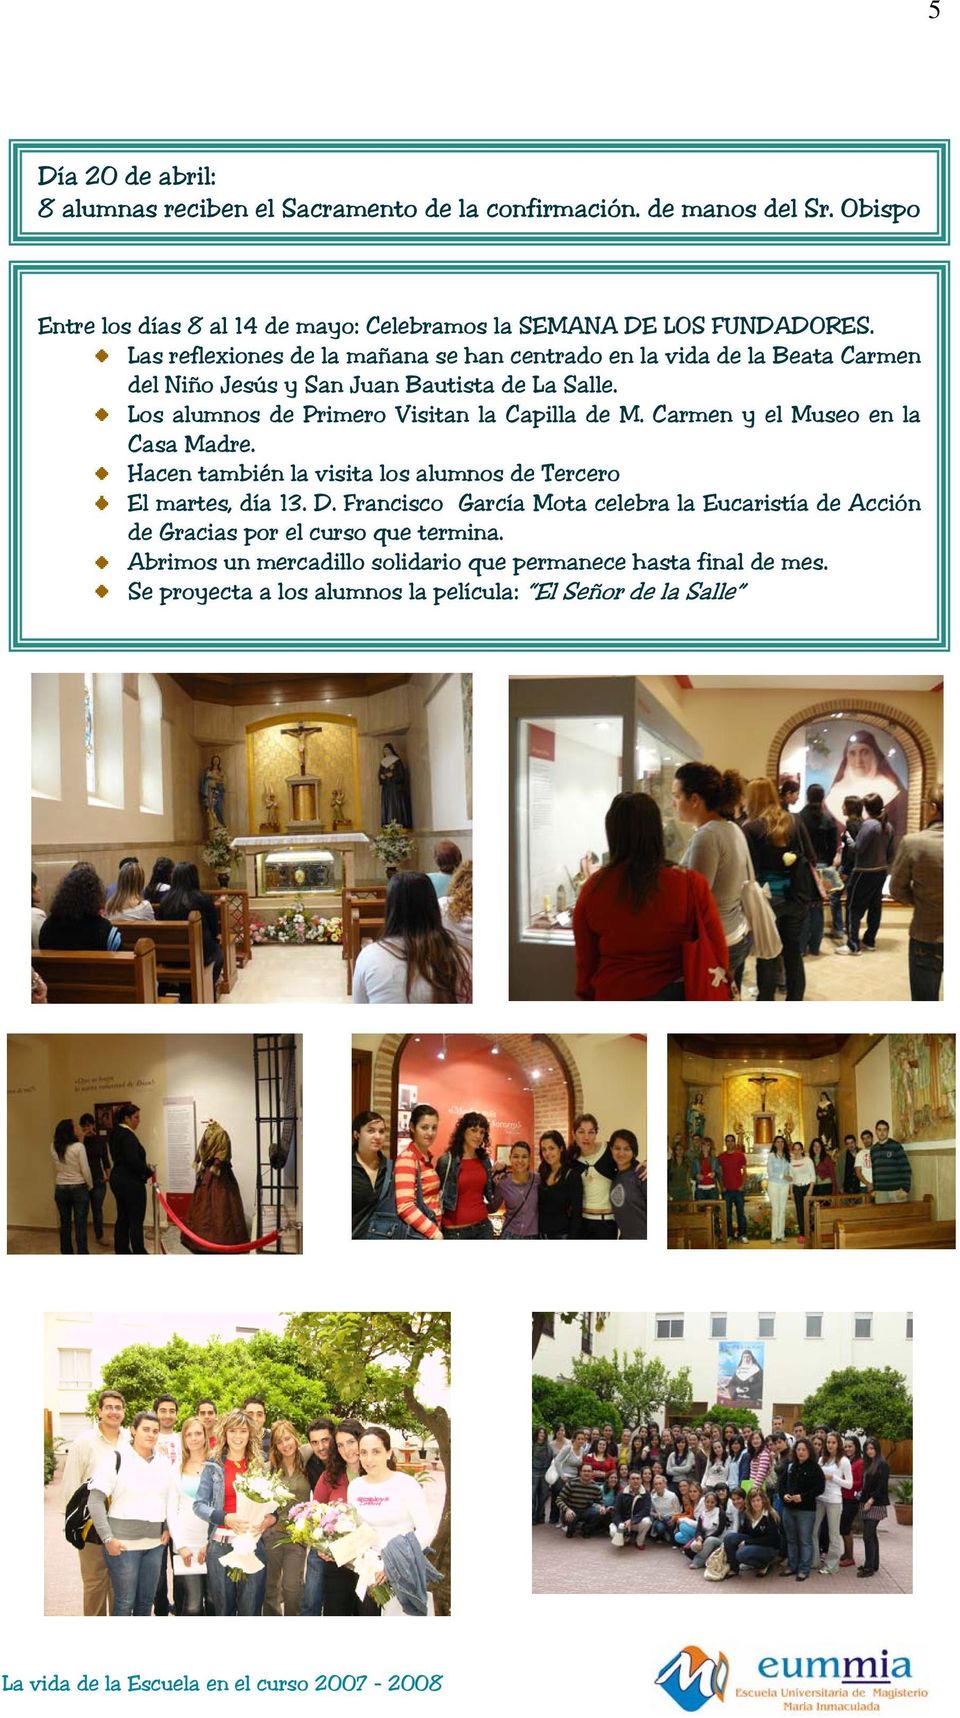 Las reflexiones de la mañana se han centrado en la vida de la Beata Carmen del Niño Jesús y San Juan Bautista de La Salle.